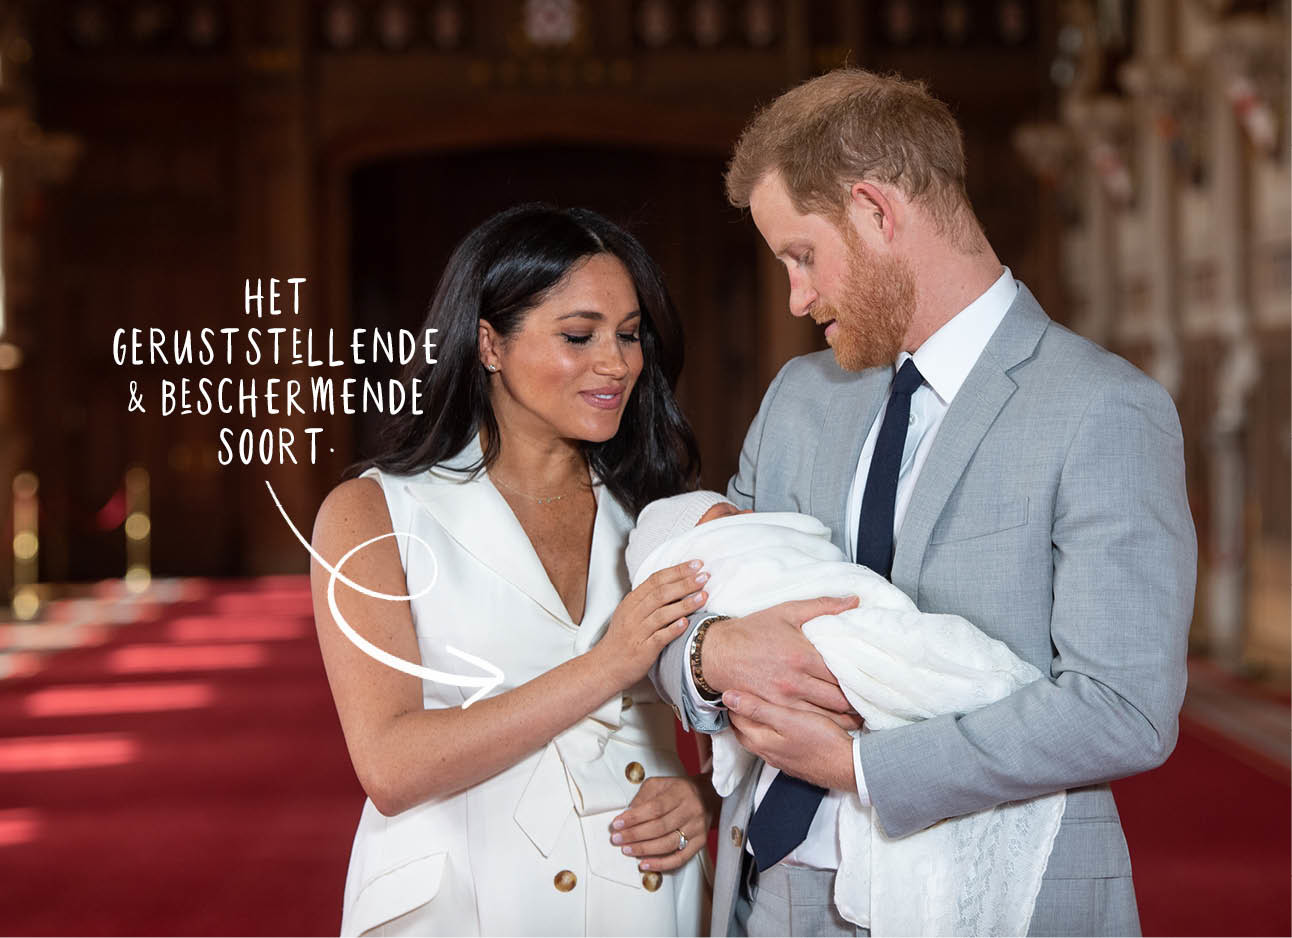 meghan markle en prins harry met baby Archie op het eerste foto moment als familie meghan witte jurk harry blauw licht pak